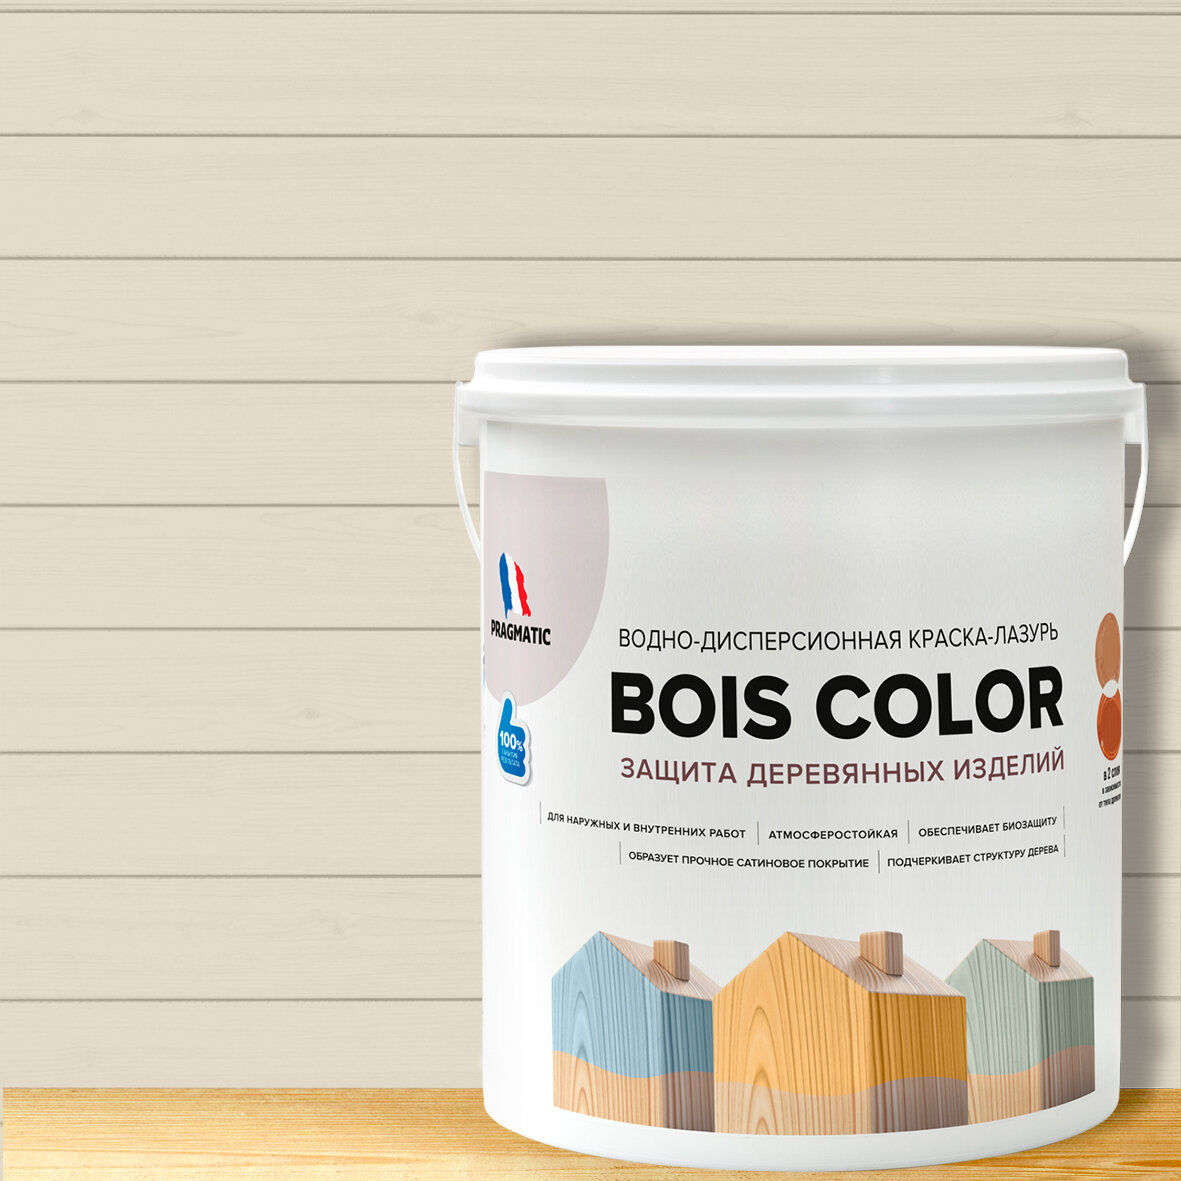 Краска (лазурь) для деревянных поверхностей и фасадов, обеспечивает биозащиту, защищает от плесени, грибков, атмосферостойкая, водоотталкивающая BOIS COLOR 0,9 л цвет Слоновая кость 8498